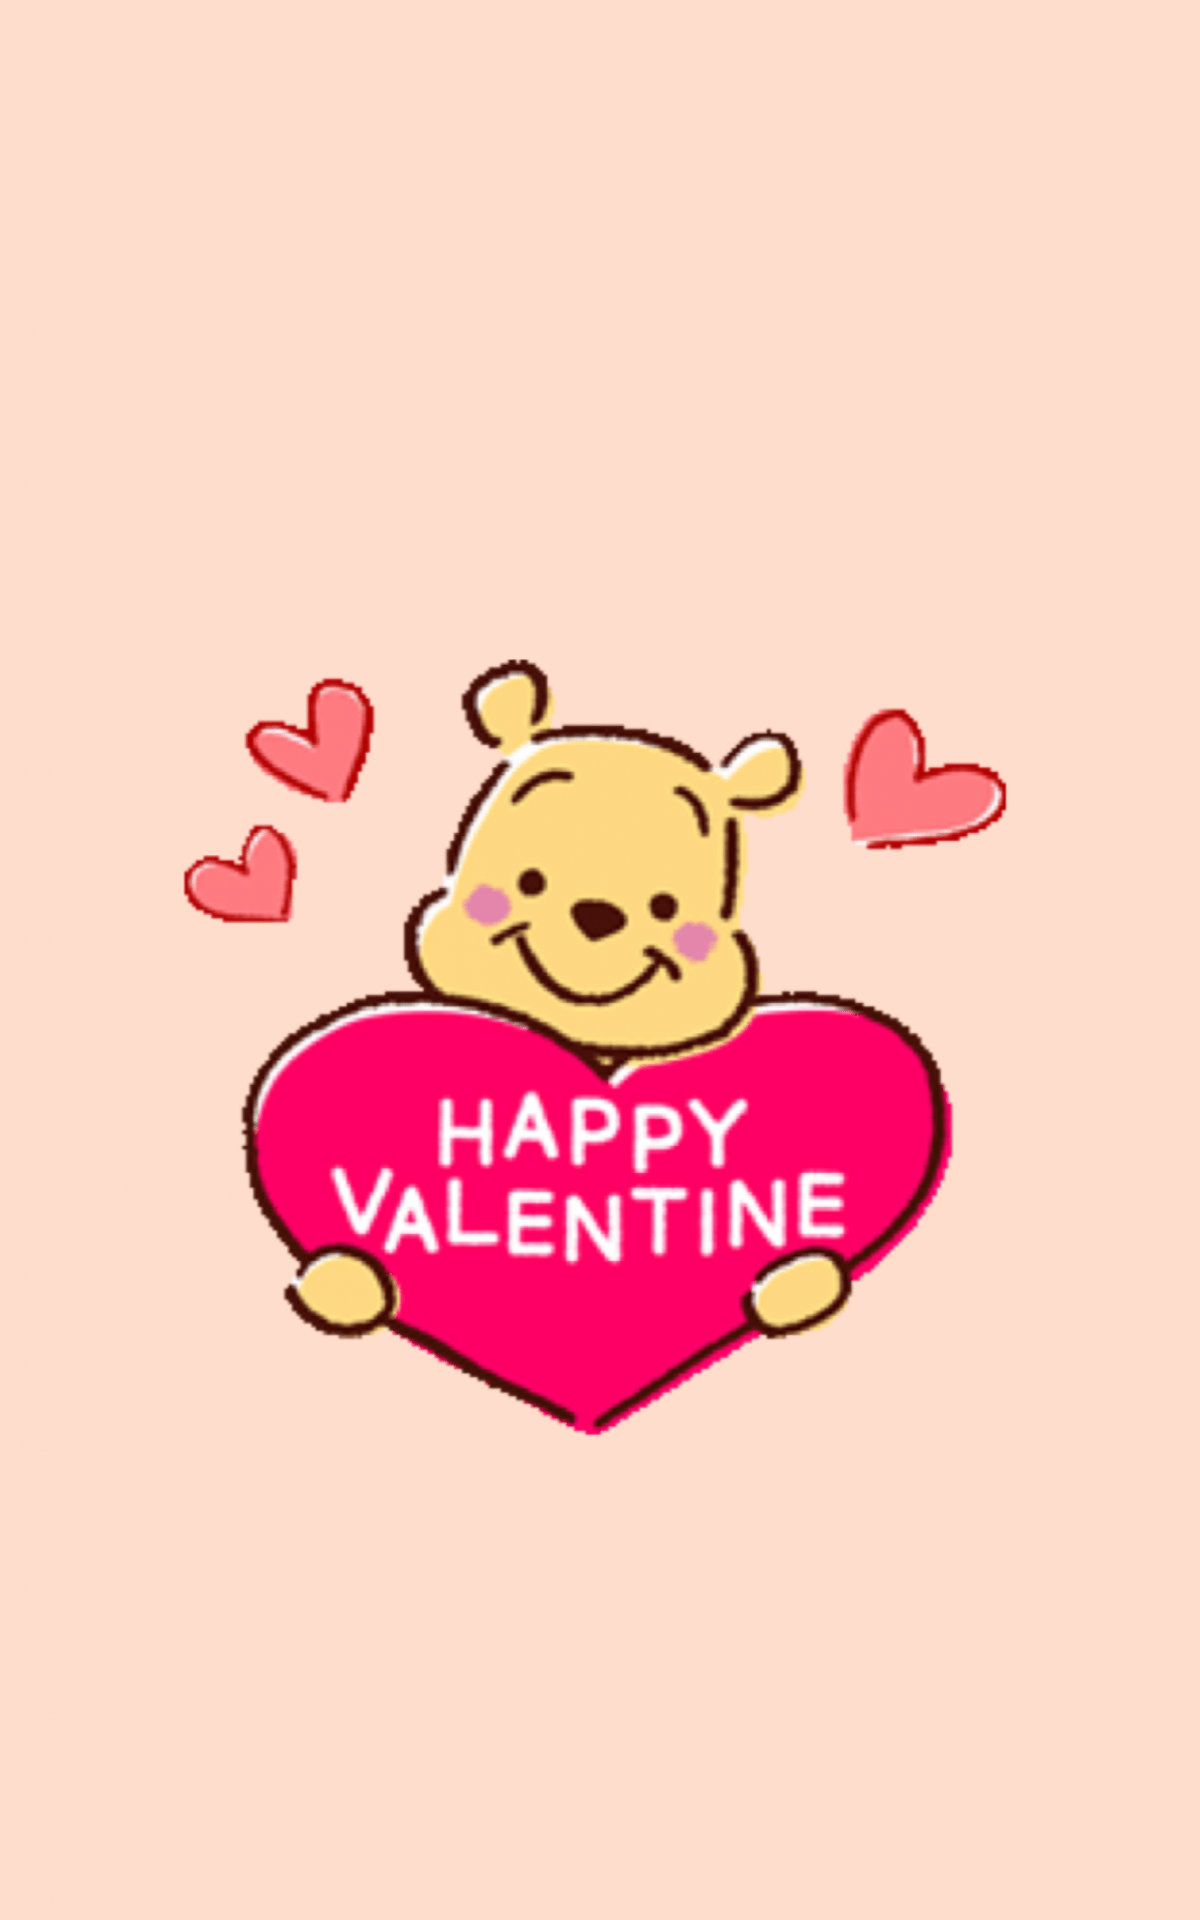 Winnie the pooh valentine wallpaper - Valentine's Day